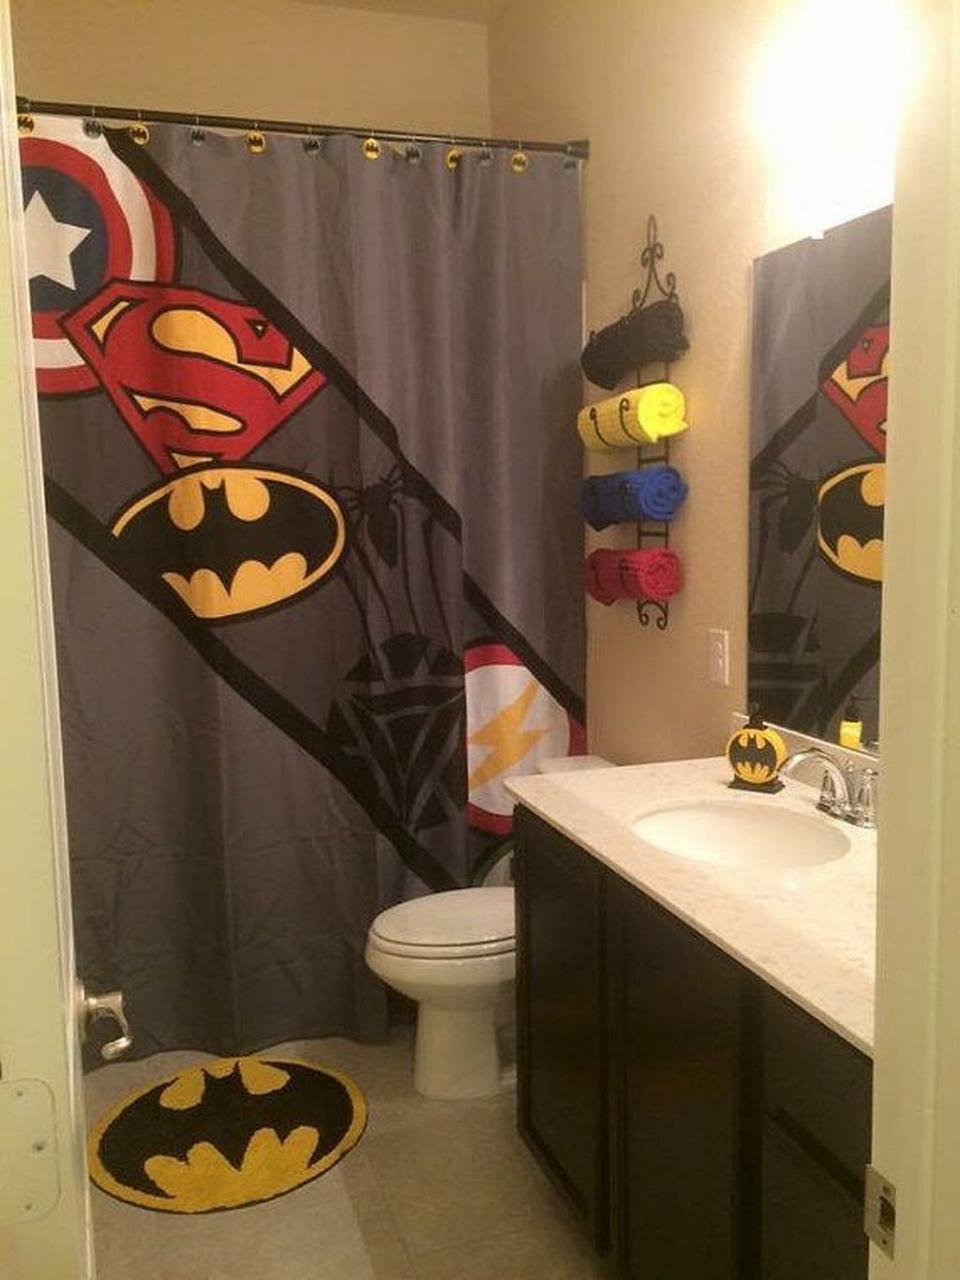 Batman Bathroom Ideas that Never Get Old Boys bathroom decor, Little